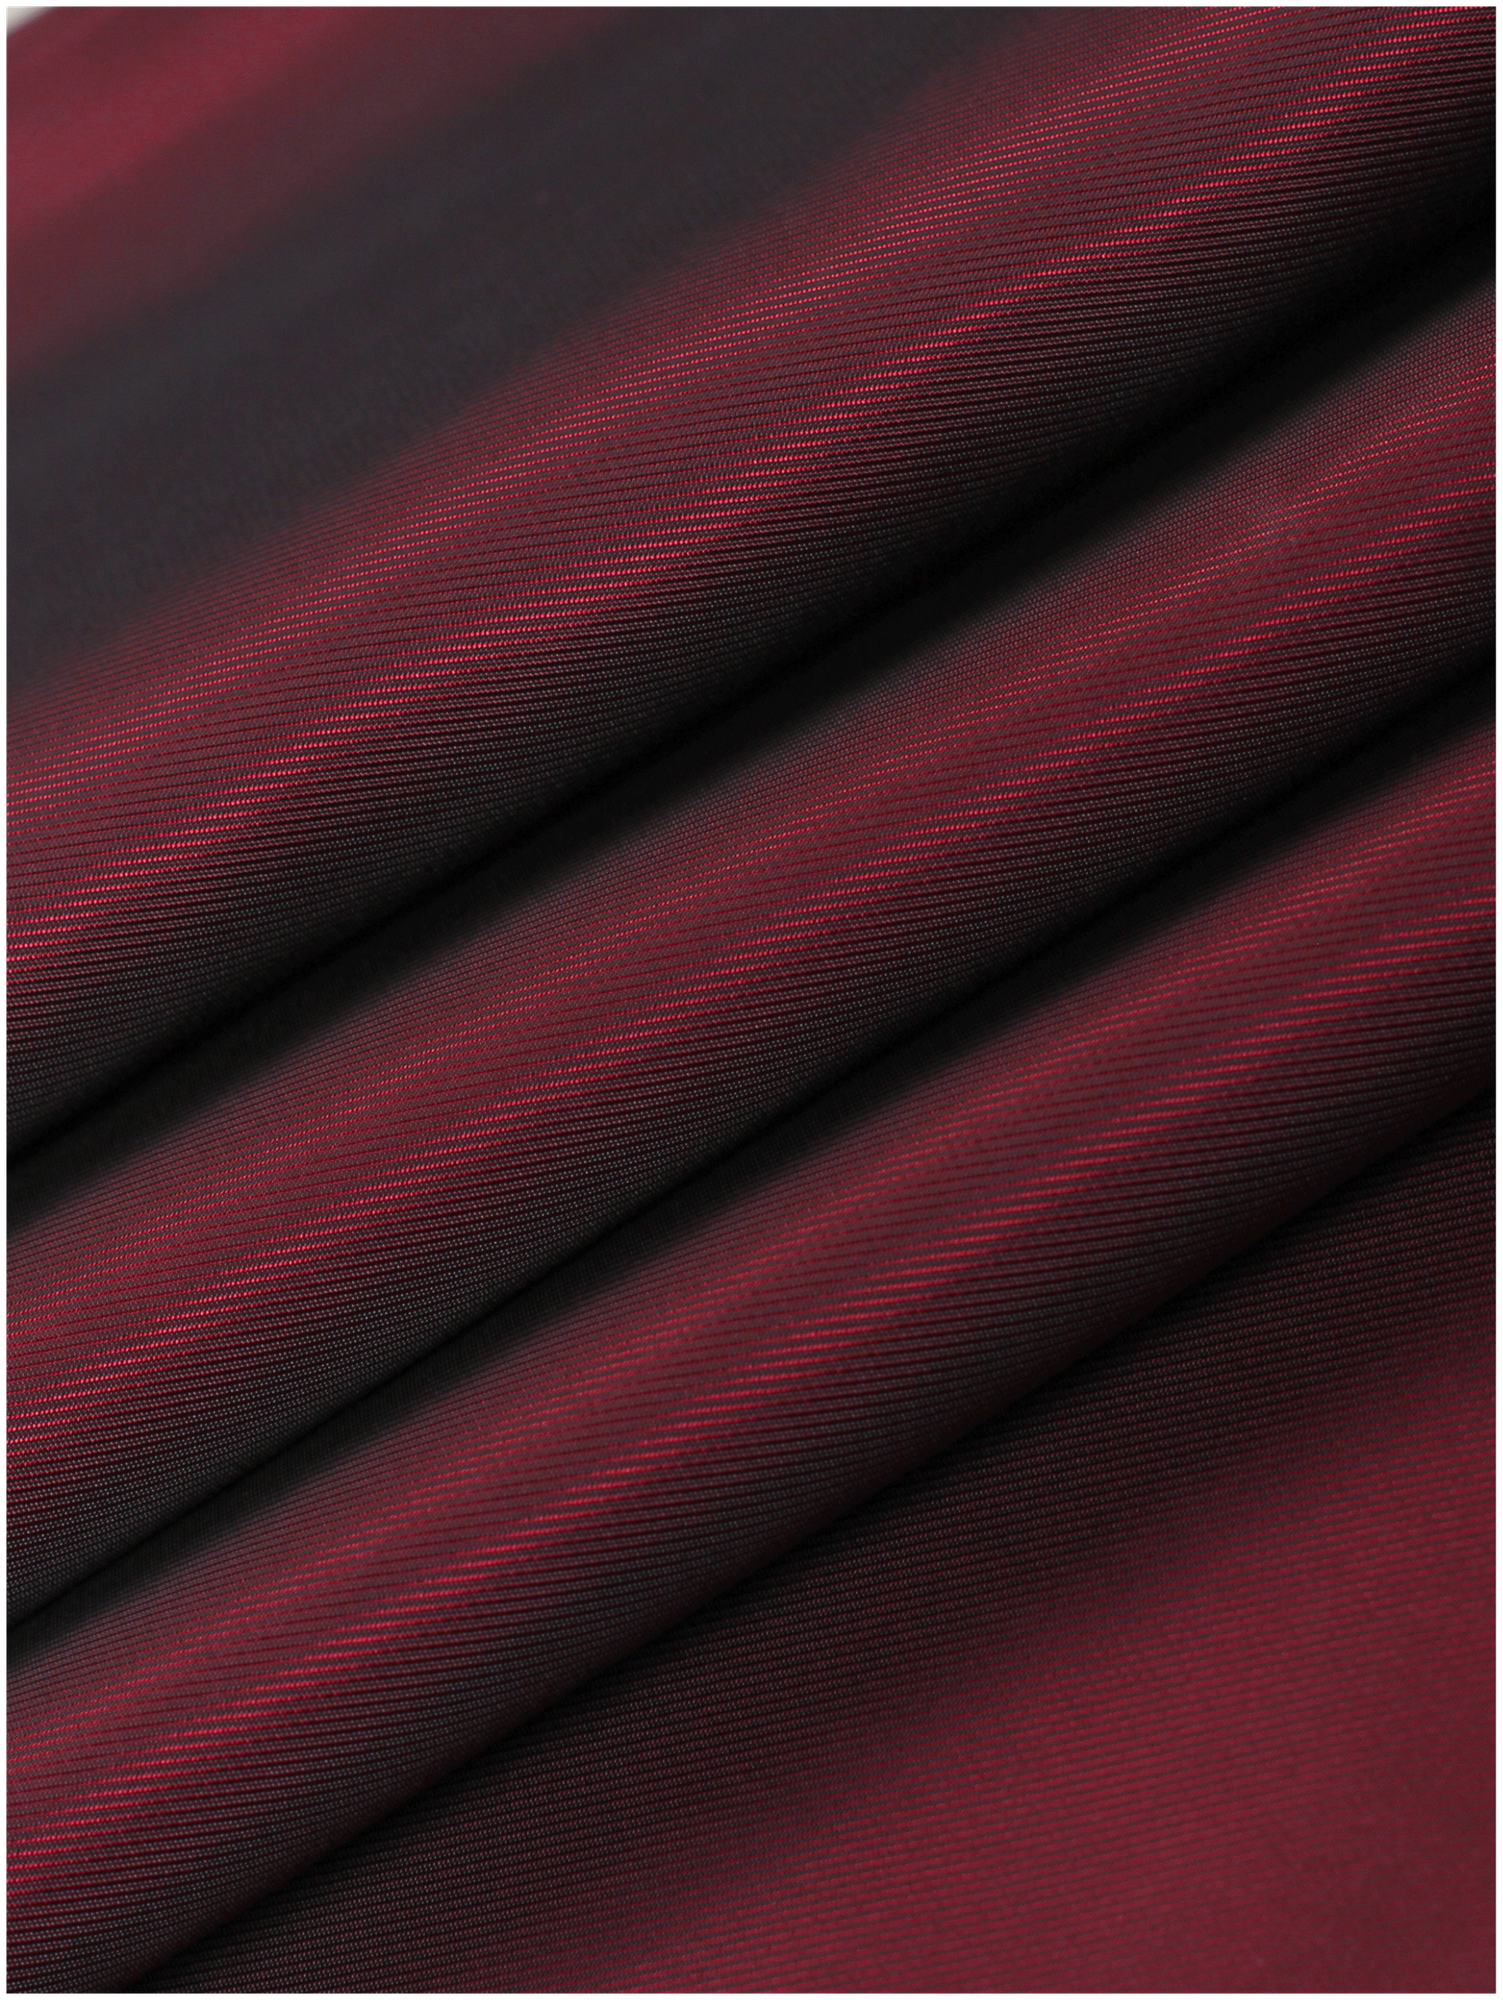 Ткань подкладочная бордовая для одежды MDC FABRICS S009\1261 однотонная для шитья, в рубчик. Поливискоза. Отрез 1 метр